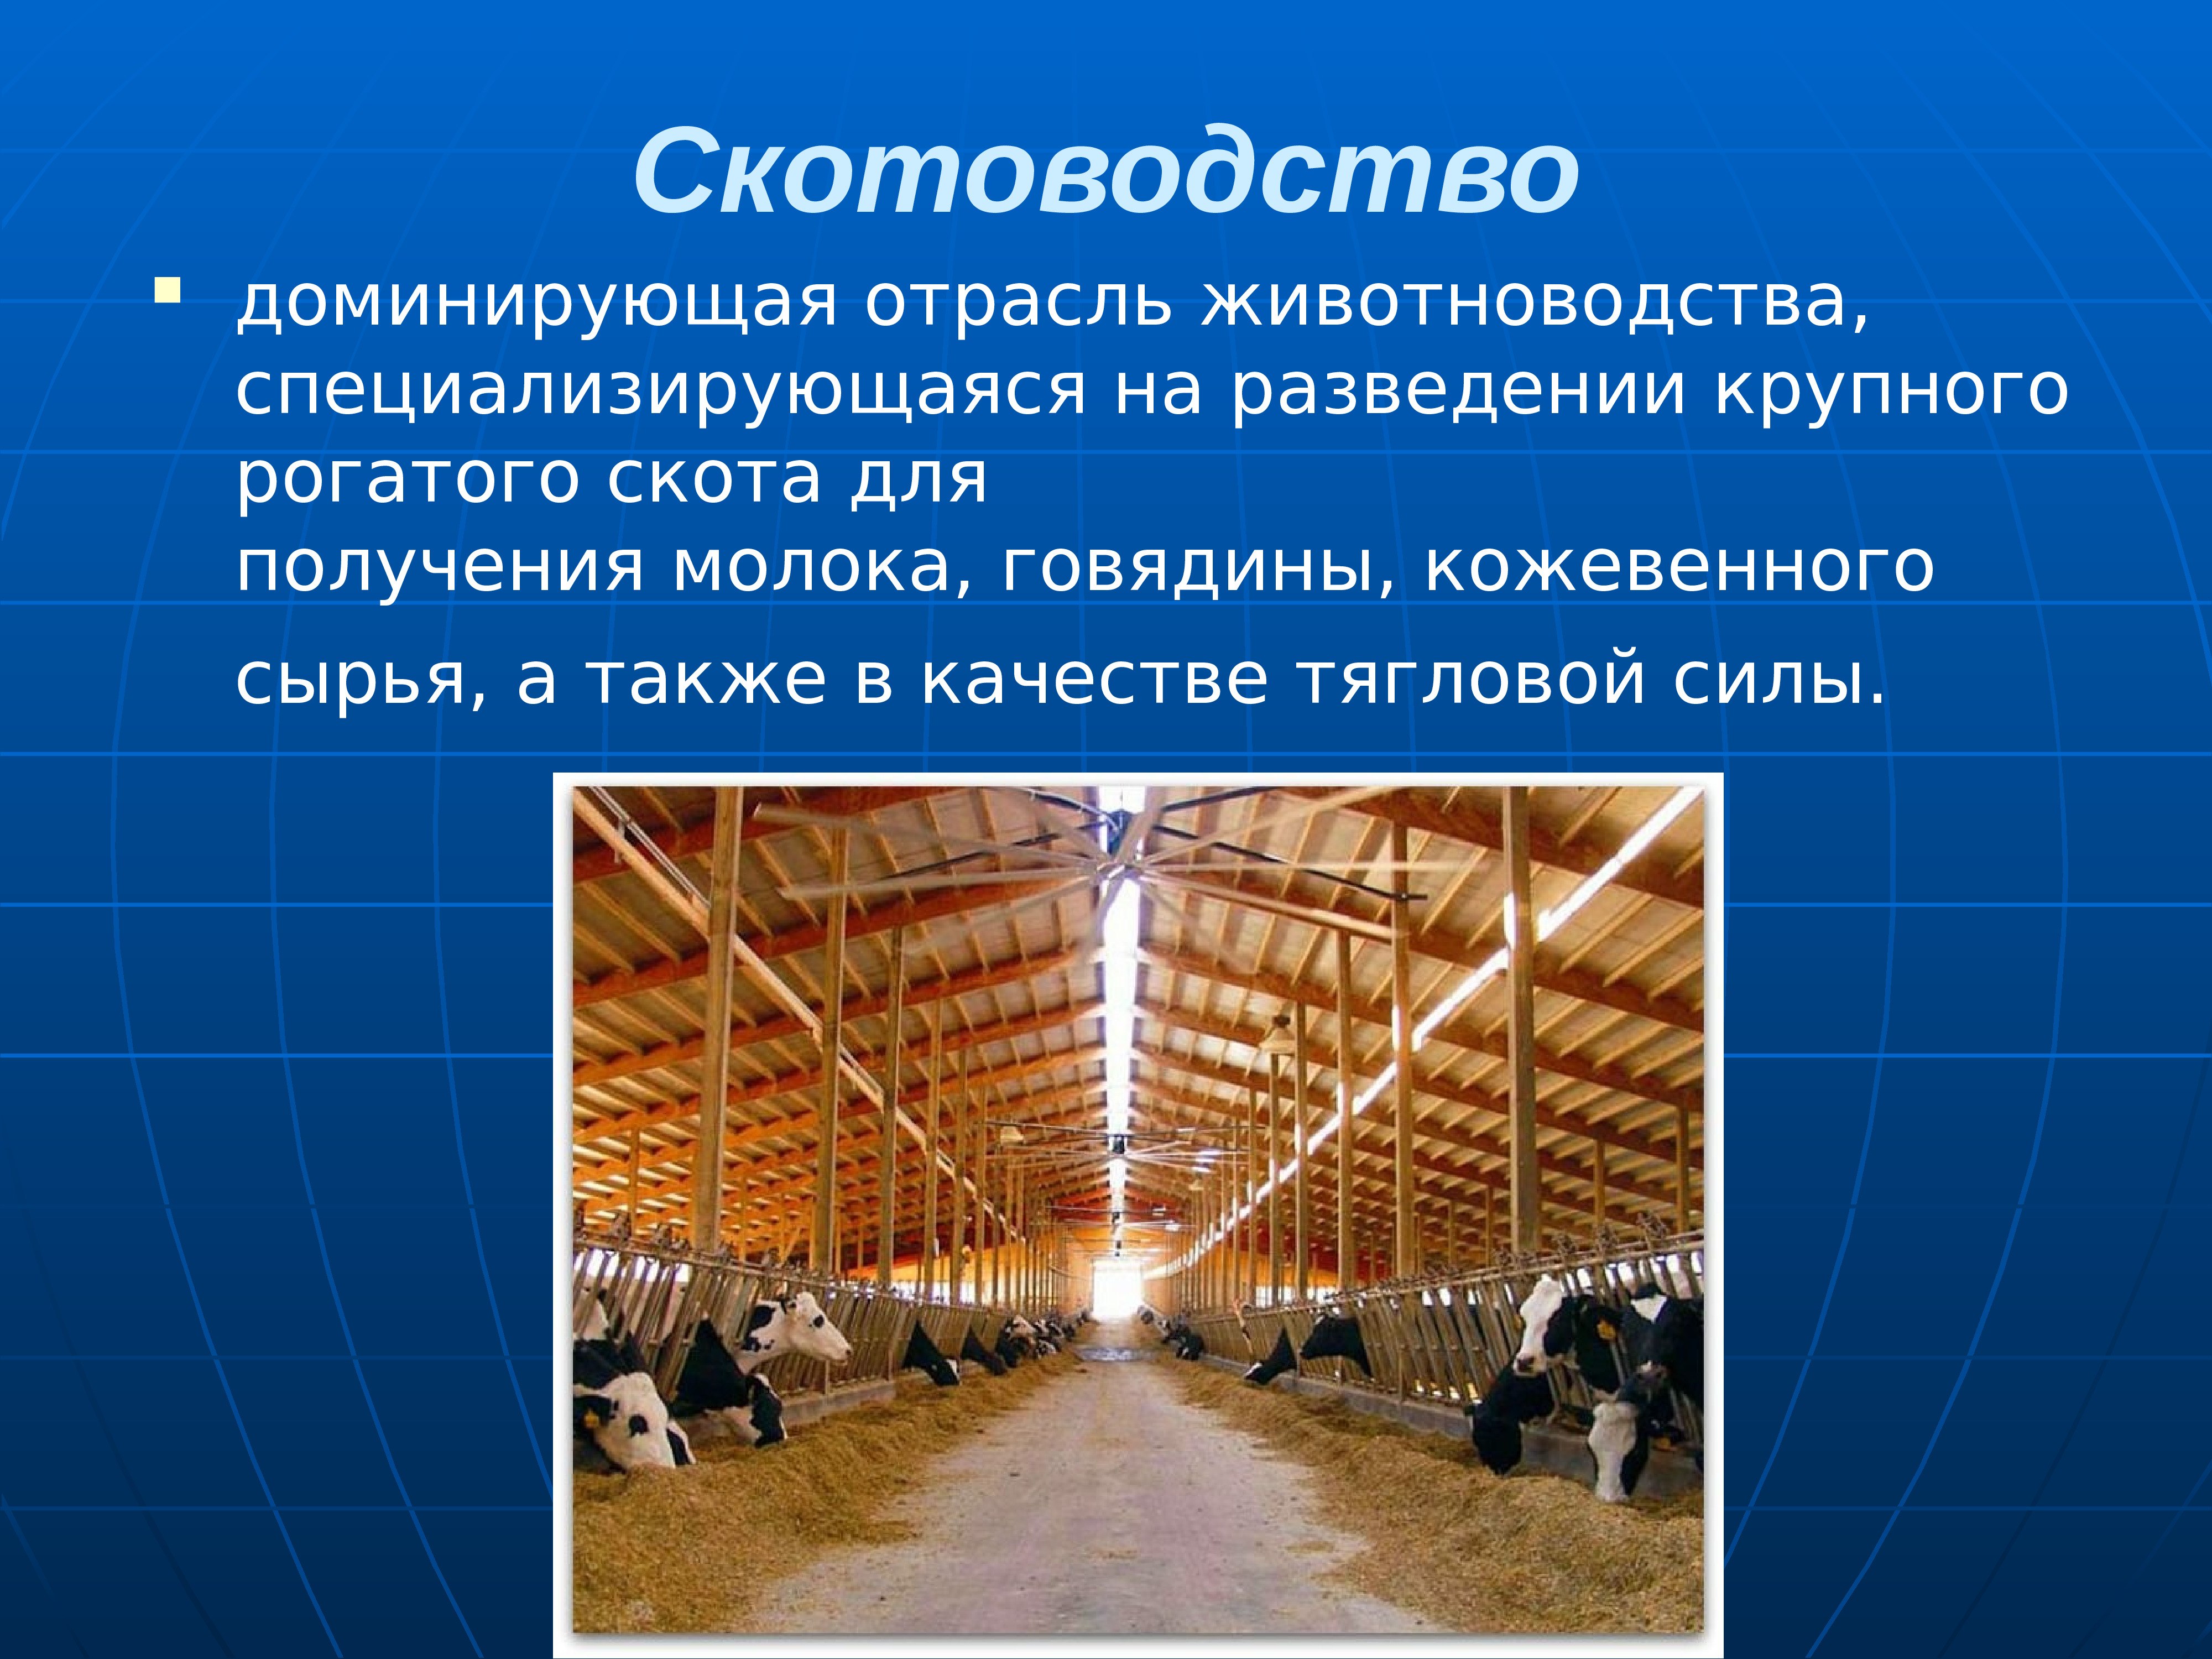 Для центральной россии характерно скотоводство. Скотоводство отрасль животноводства. Животноводство презентация. Презентация отрасли животноводства. Презентация на тему скотоводство.